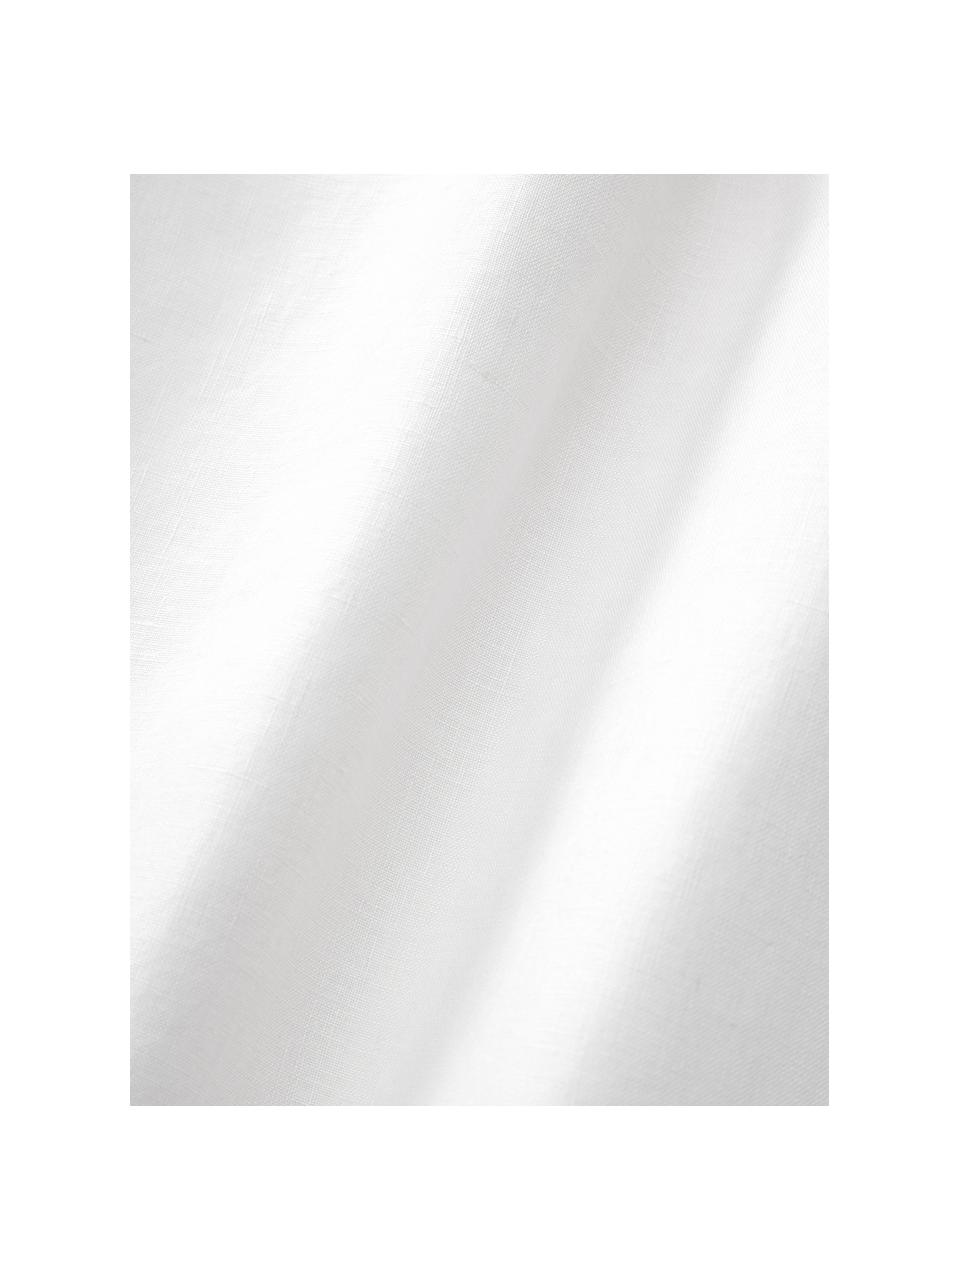 Sábana bajera de lino lavado Airy, 100% lino con certificado European Flax
Densidad de hilo 110 TC, calidad estándar

El lino es una fibra natural que se caracteriza por su transpirabilidad, durabilidad y suavidad. El lino es un material refrescante, absorbe la humedad intercambiándola con el ambiente, por lo que es ideal para temperaturas altas.

El material utilizado en este producto ha sido probado contra sustancias nocivas y está certificado según STANDARD 100 por OEKO-TEX®, 137, CITEVE., Blanco, Cama 90 cm (90 x 200 x 25 cm)